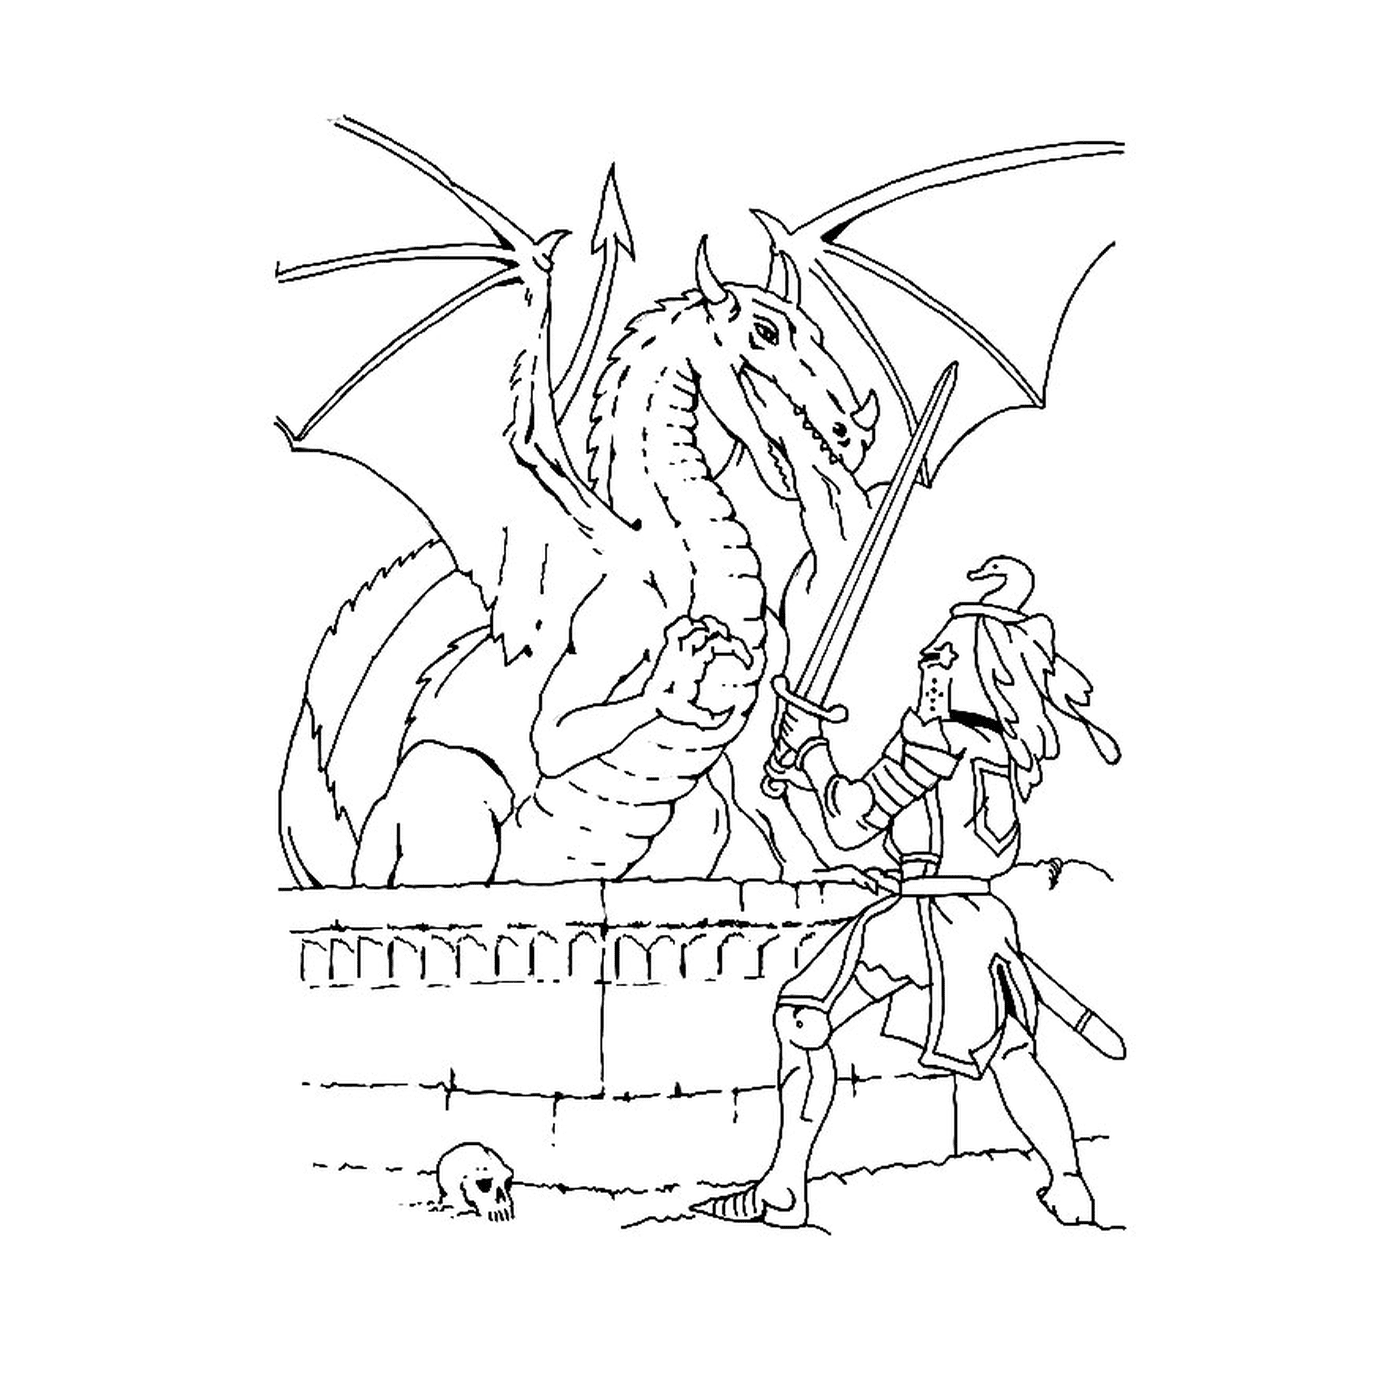   Chevalier et dragon - Un dragon et un chevalier 